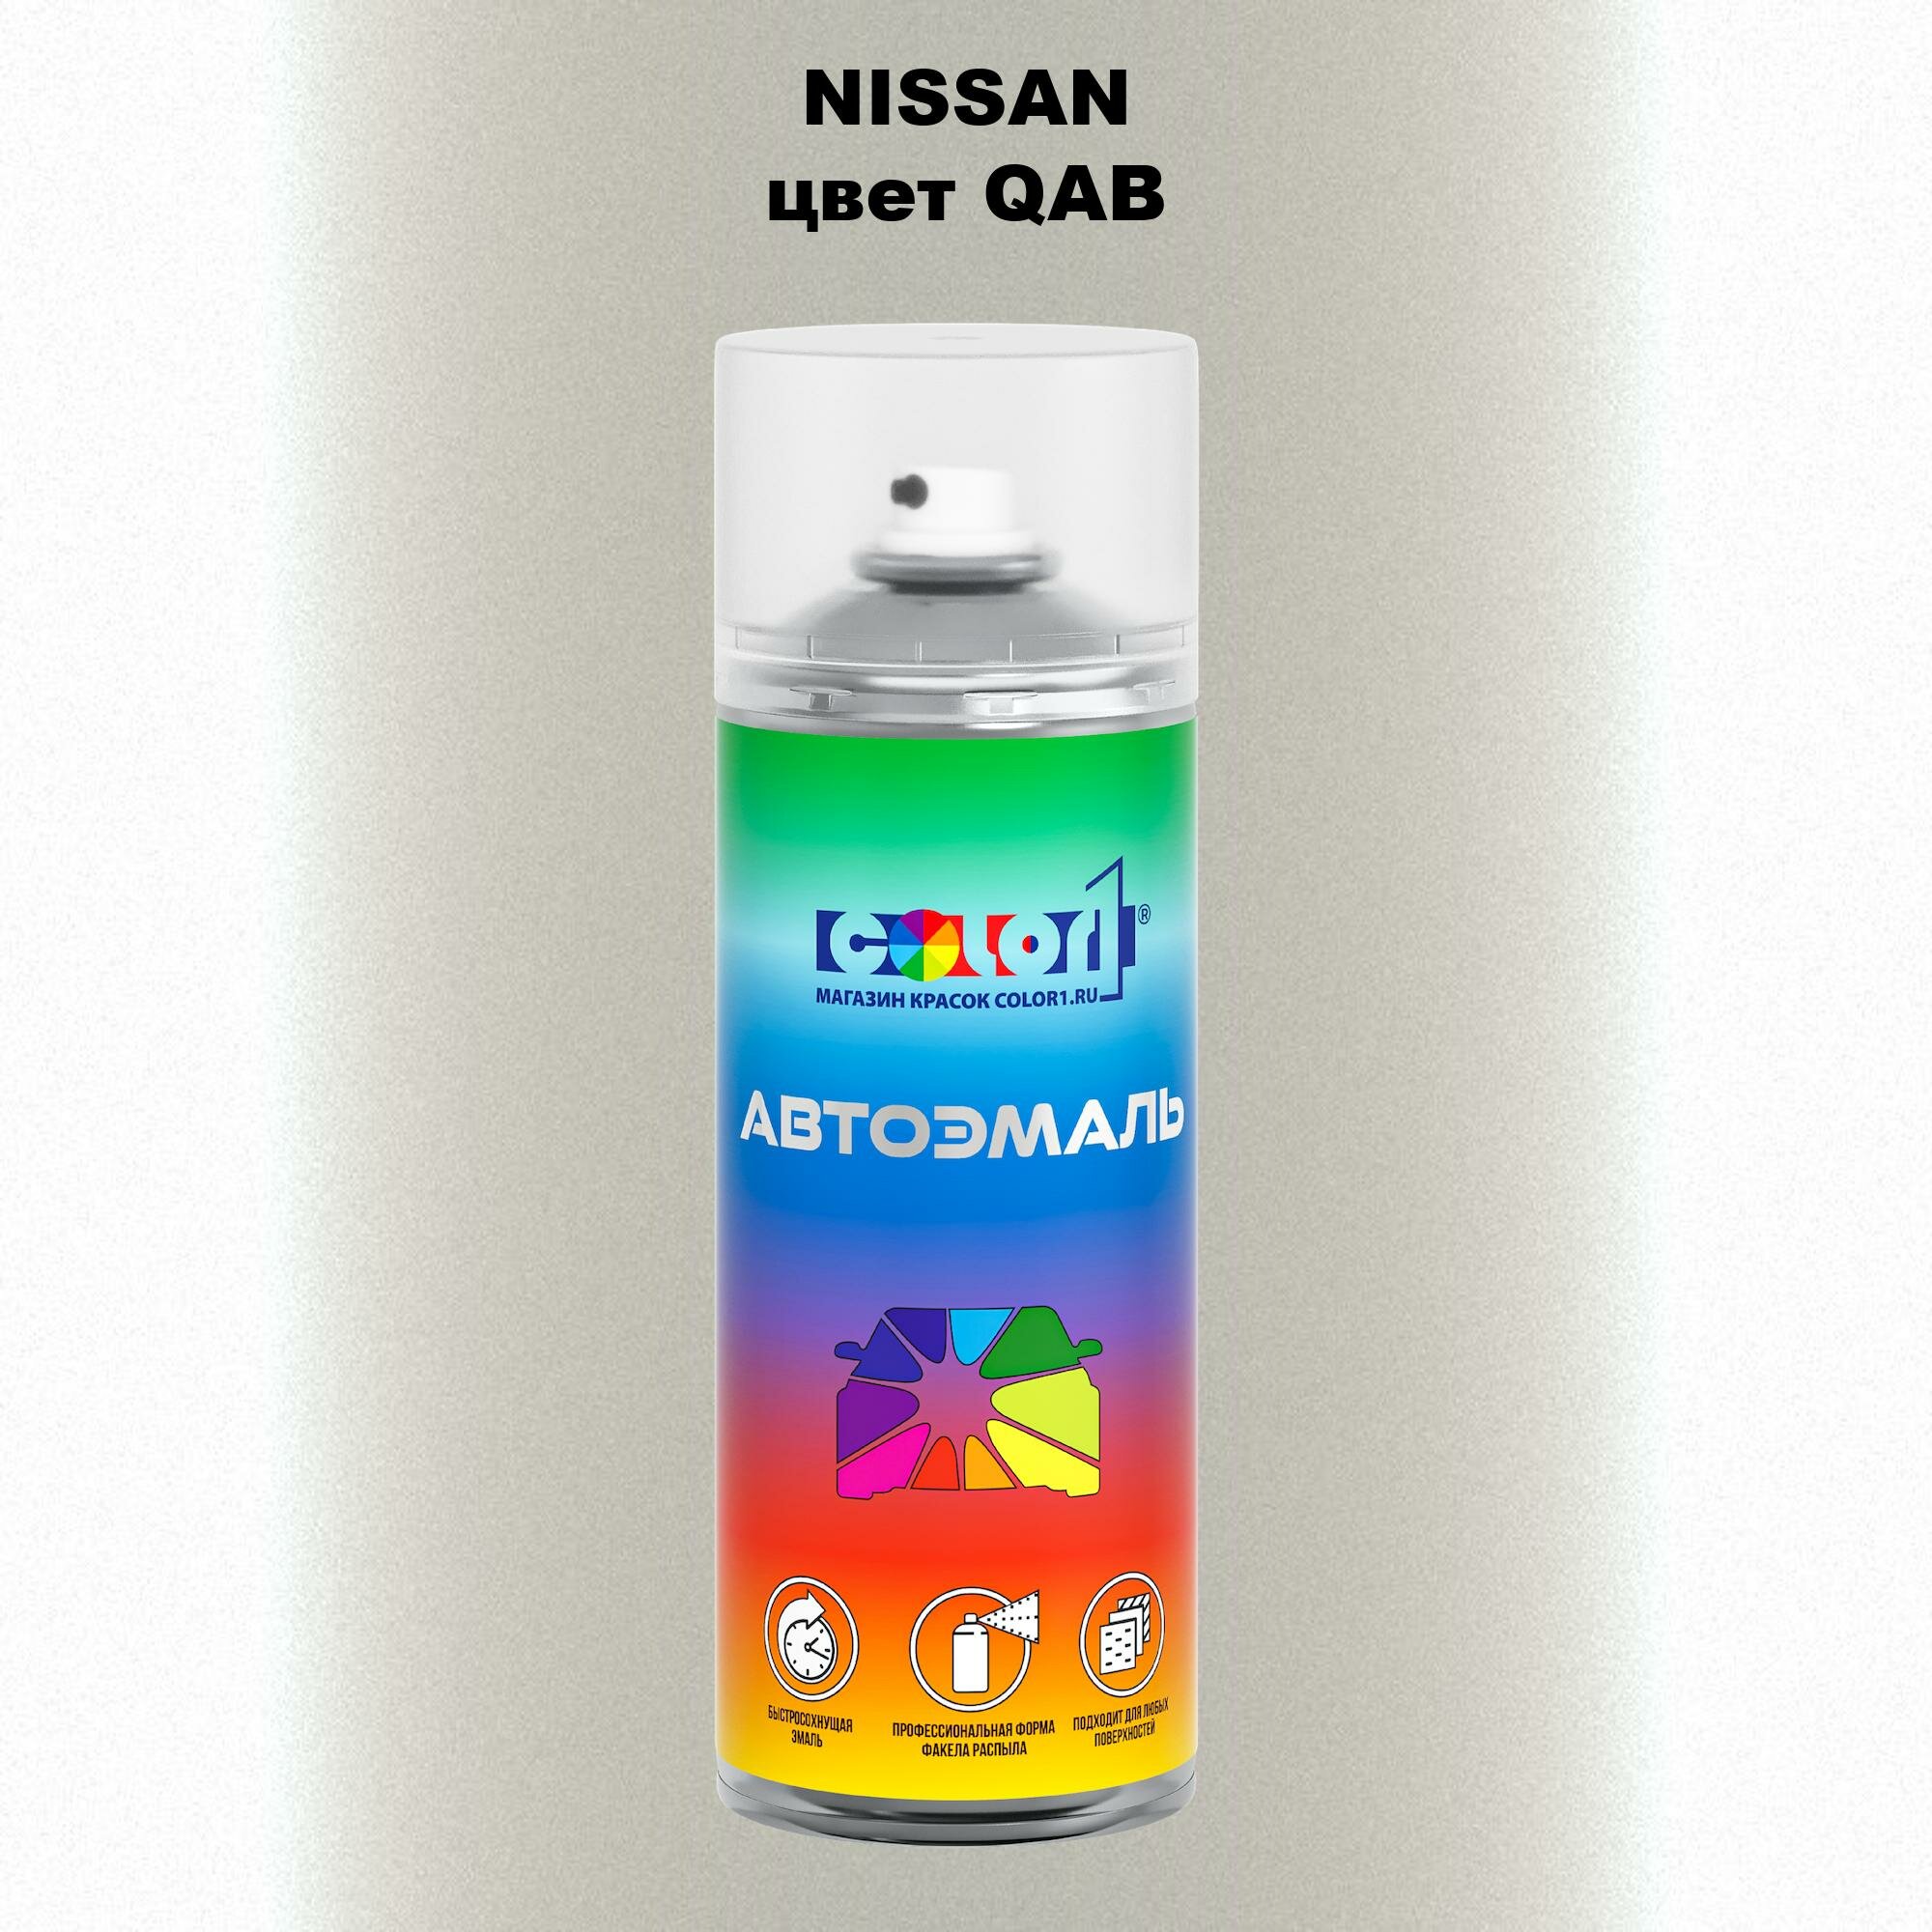 Аэрозольная краска 520мл, для NISSAN, цвет QAB - PEARL WHITE, IVORY PEARL, MAJESTIC WHITE, STORM WHITE